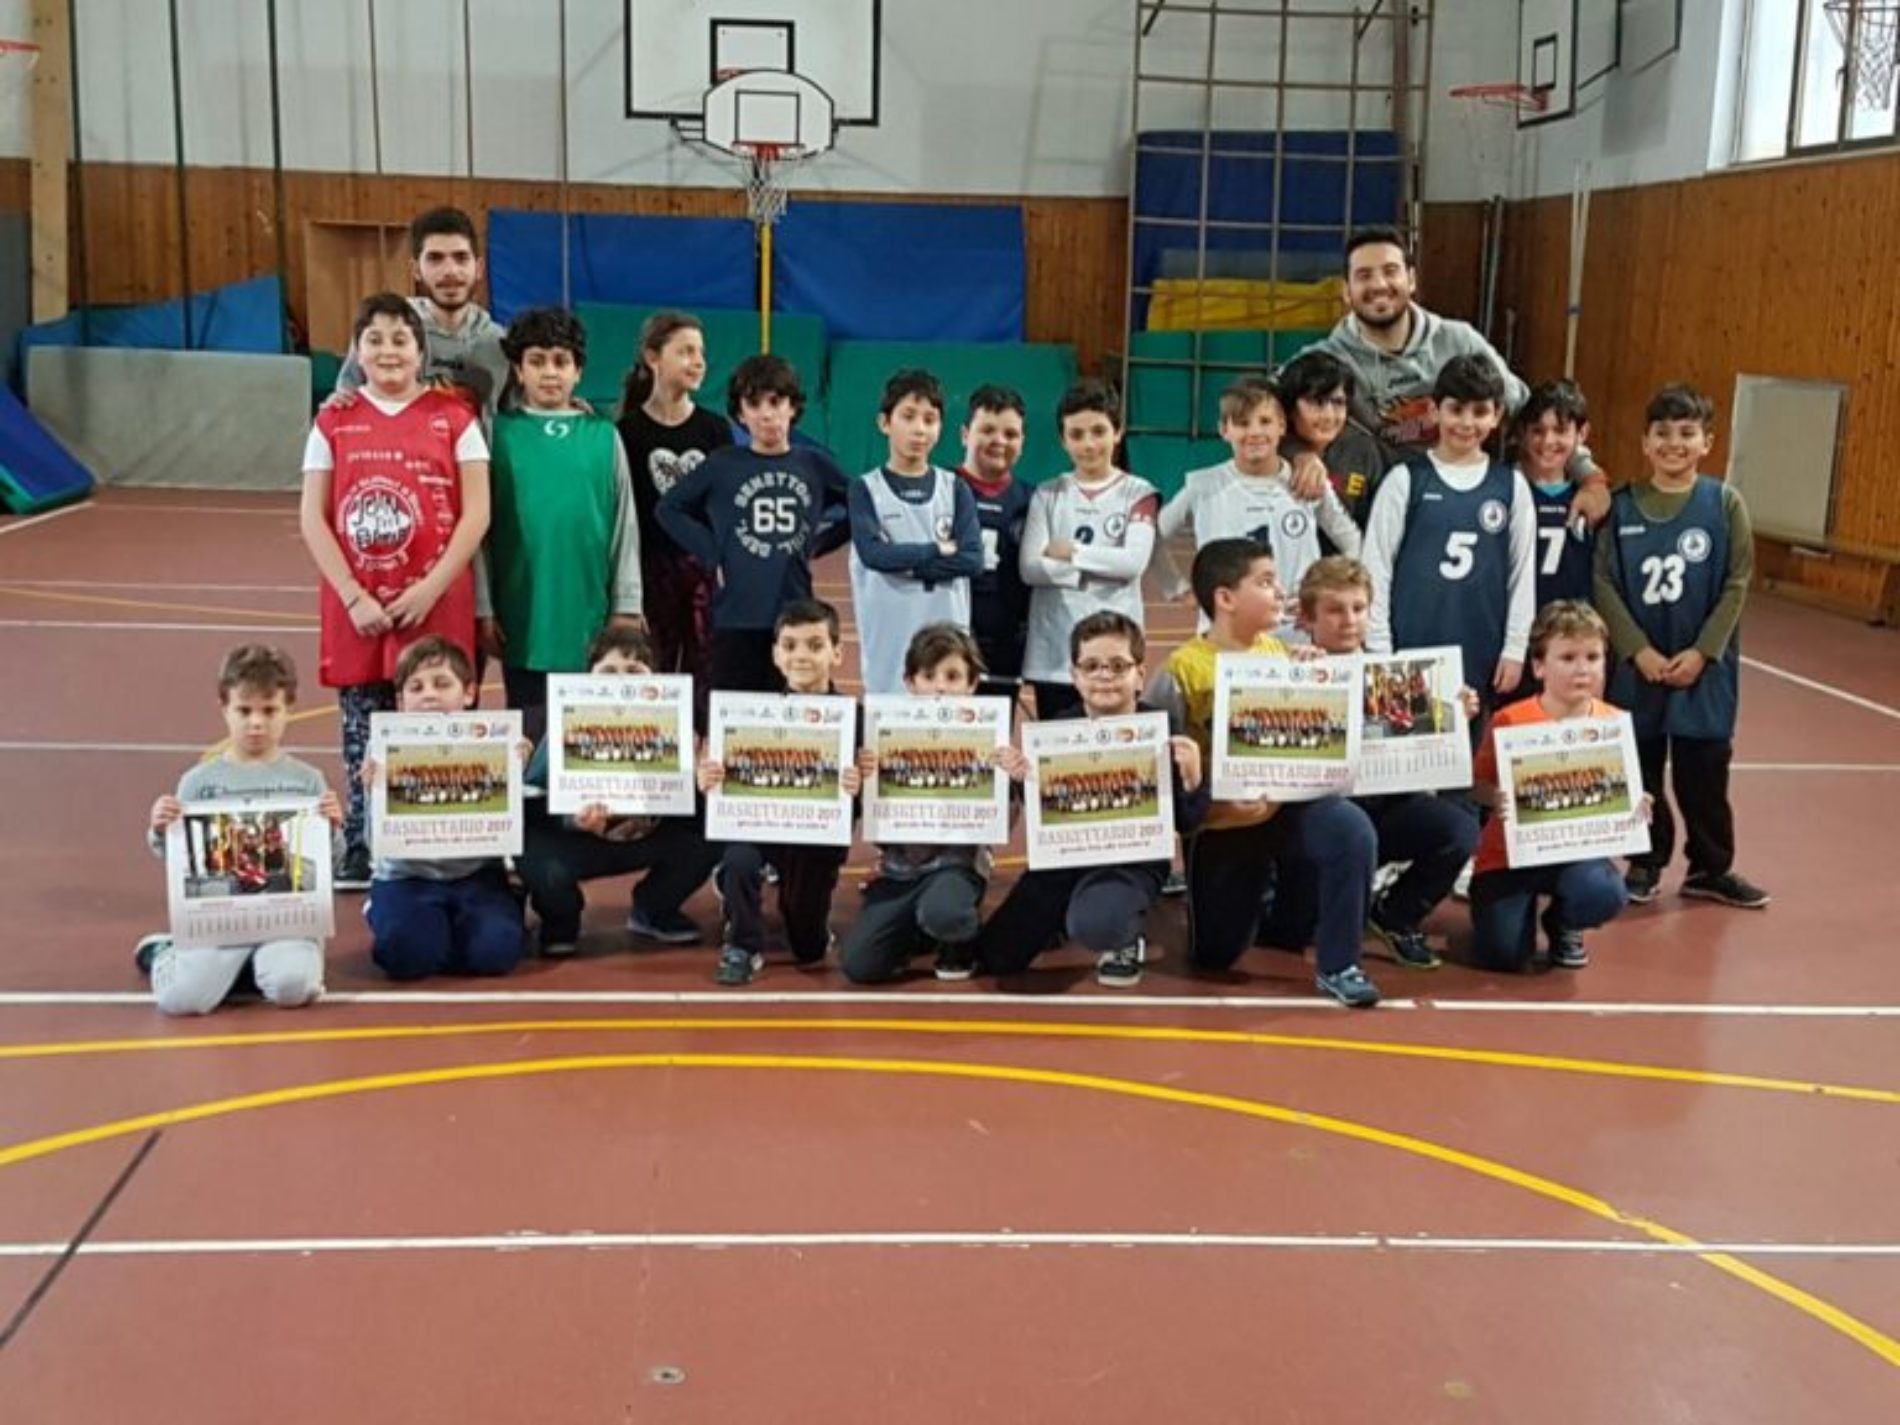 La Libertas Consolini spegne 37 candeline e presente il “Baskettario 2017”, un calendario degli appassionati della palla a spicchi